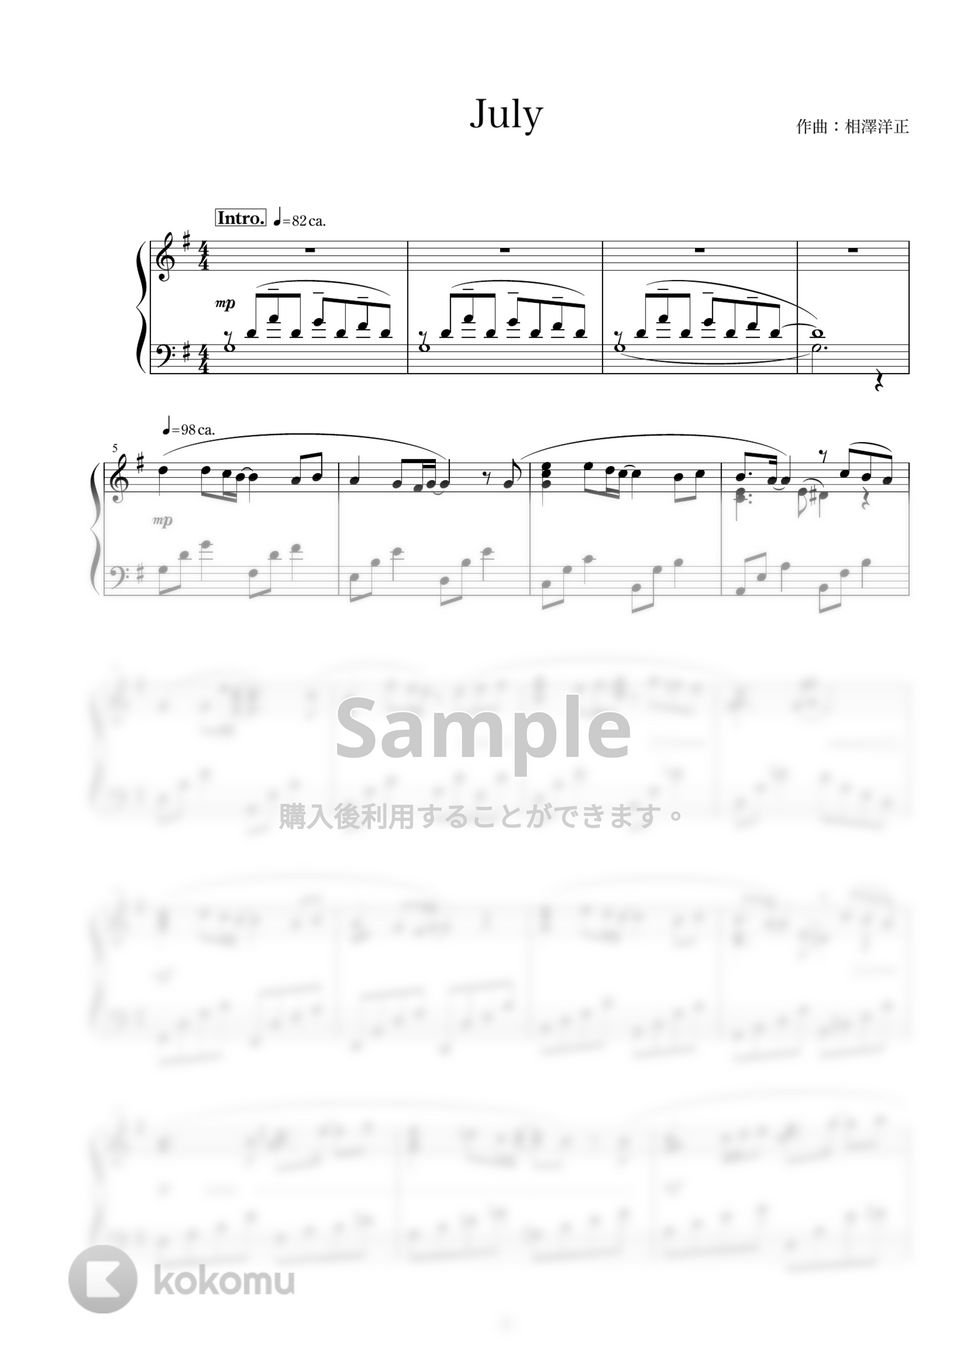 相澤洋正 - July (ピアノソロ)